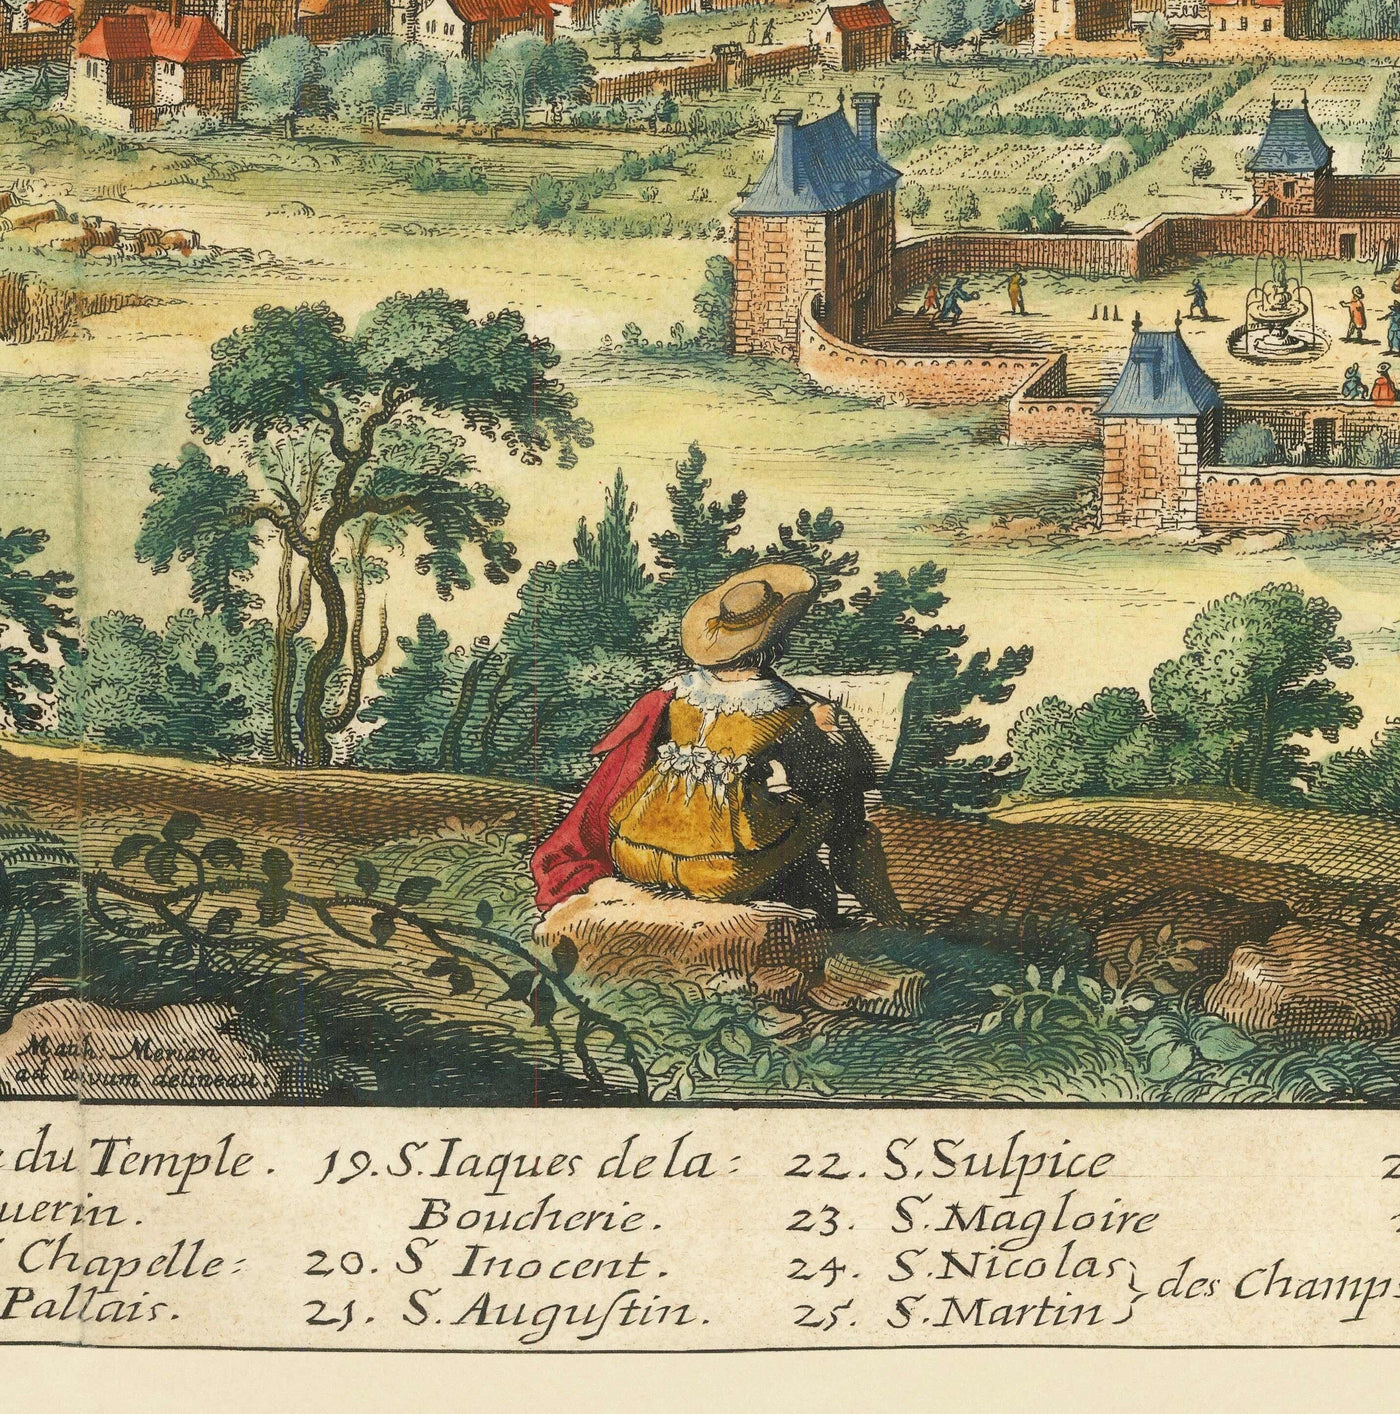 Seltene alte Karte von Paris, Frankreich von Matthaus Merian im Jahre 1648 - Notre Dame, Sainte-Chapelle, Krankenhaus St. Louis, Bastille